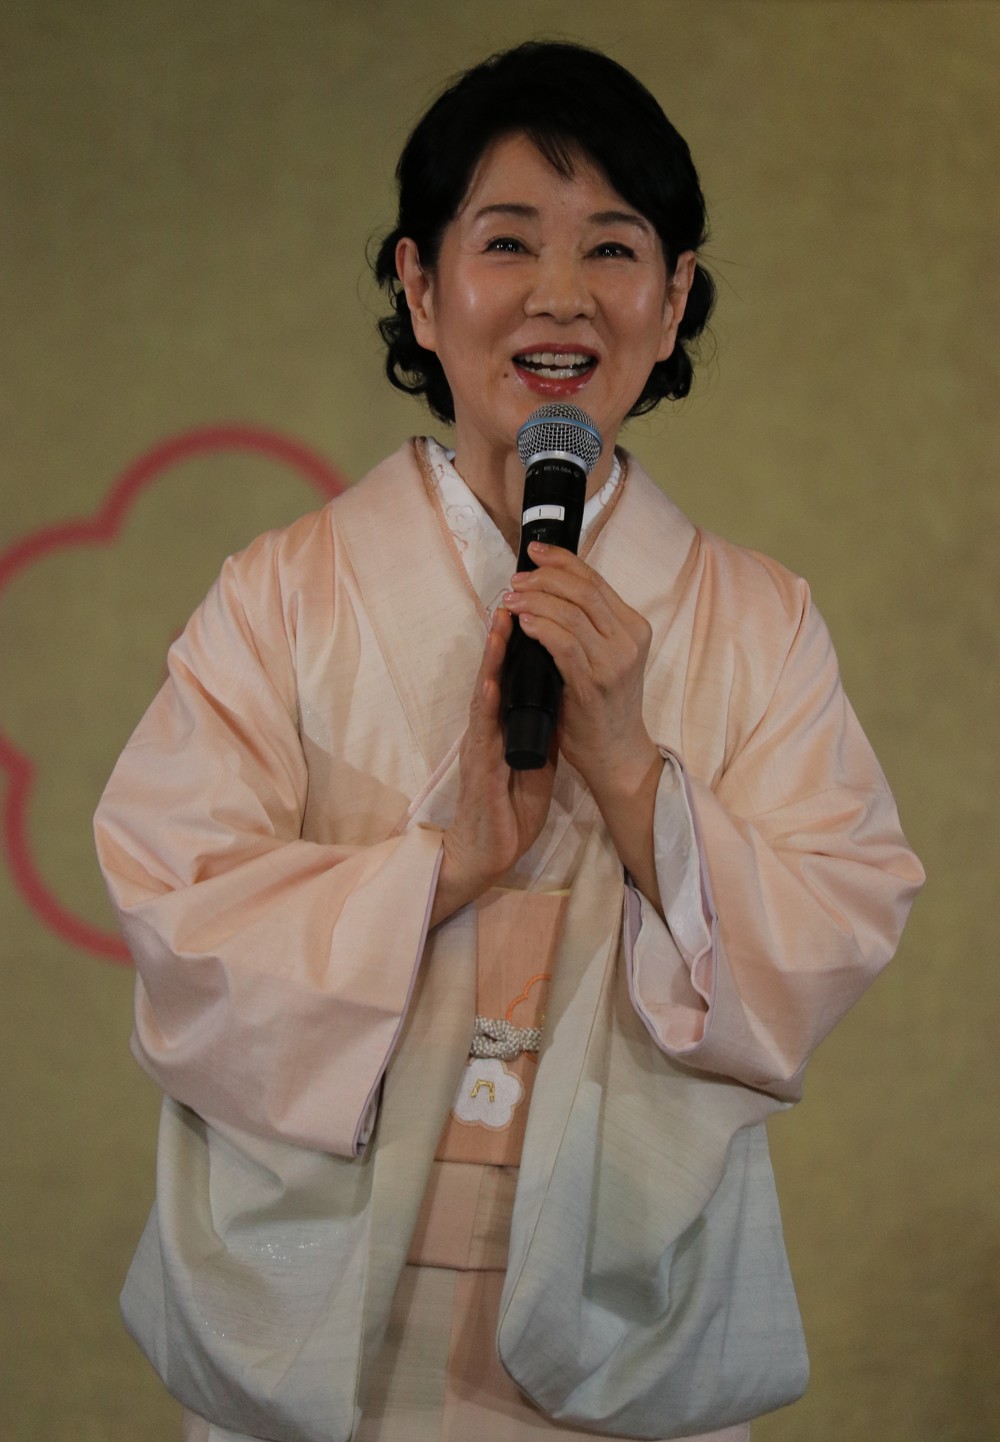 椿の葉や枝などで染められた、艶やかなピンクの着物で登壇した吉永小百合さん
